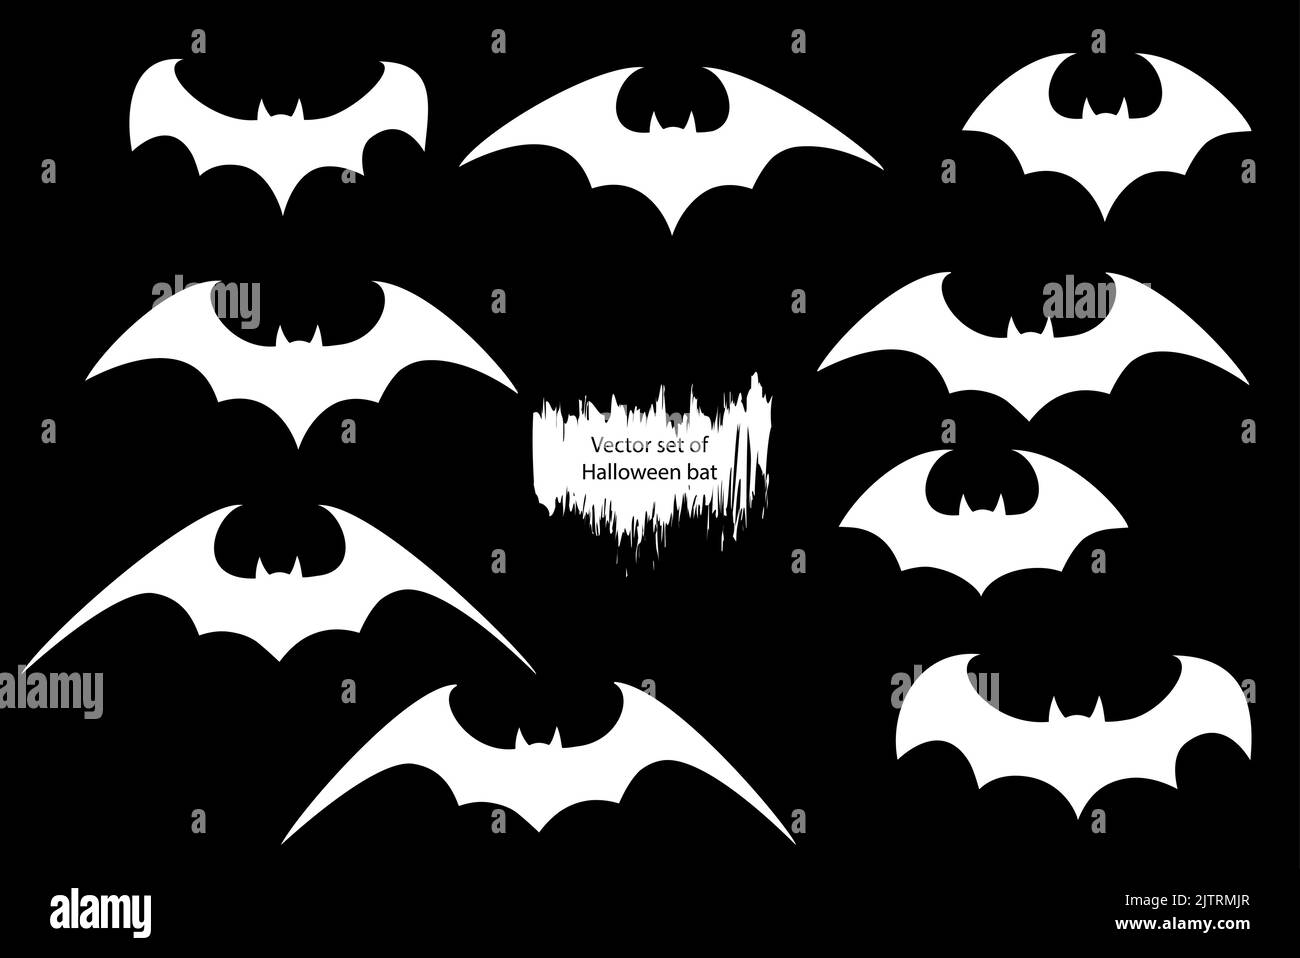 Vector set of different Halloween bats. Halloween flying bats. Vampire vector bat. Dark silhouette of bat flying in a flat style Stock Vector